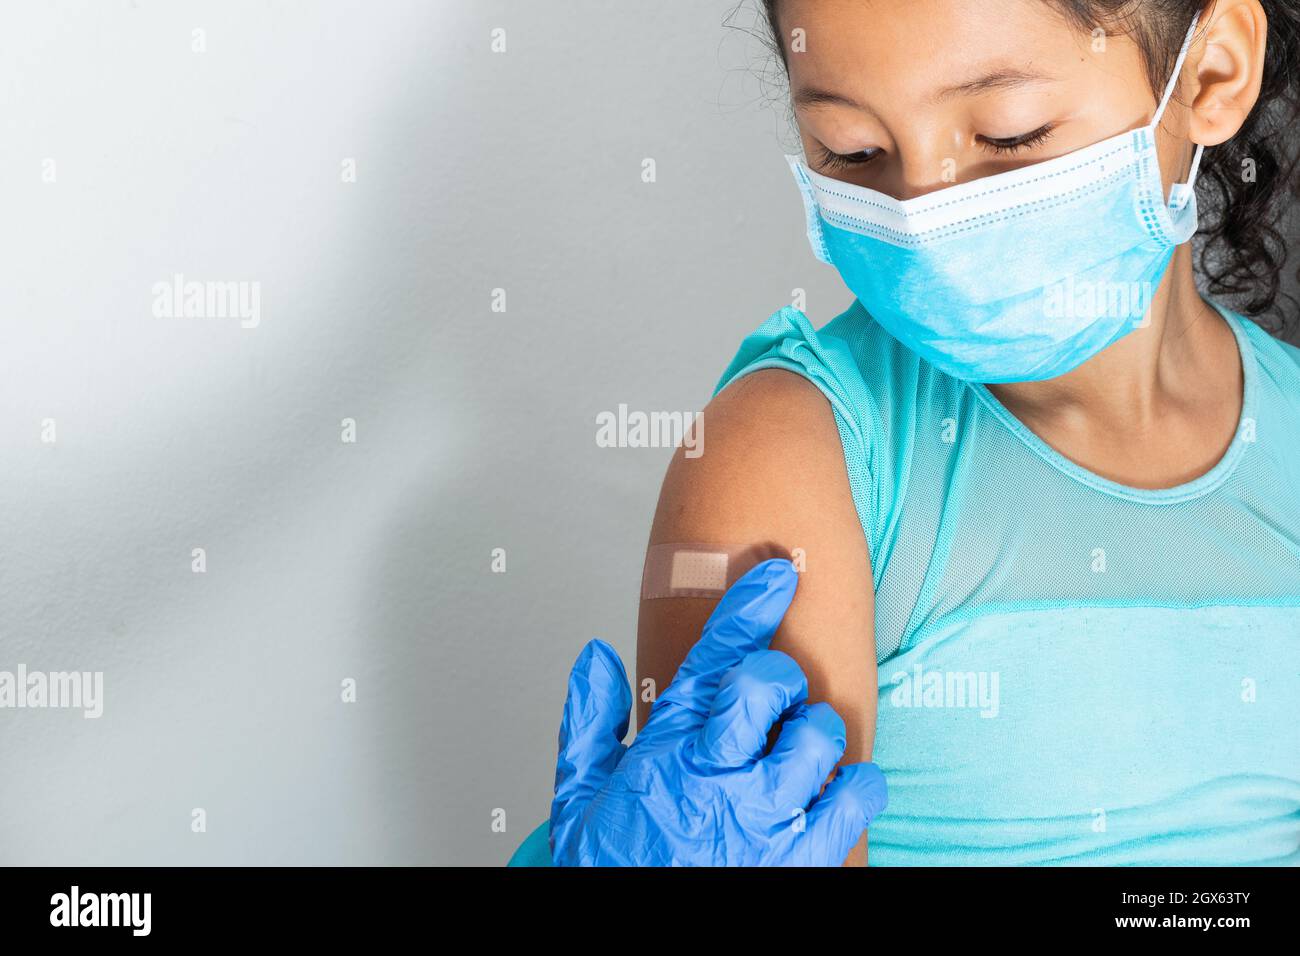 Medico in guanti protettivi di gomma blu mettendo un bendaggio adesivo sul braccio di una ragazza dopo aver ferito la pelle o iniettato il vaccino. Pronto soccorso. Medico, p Foto Stock